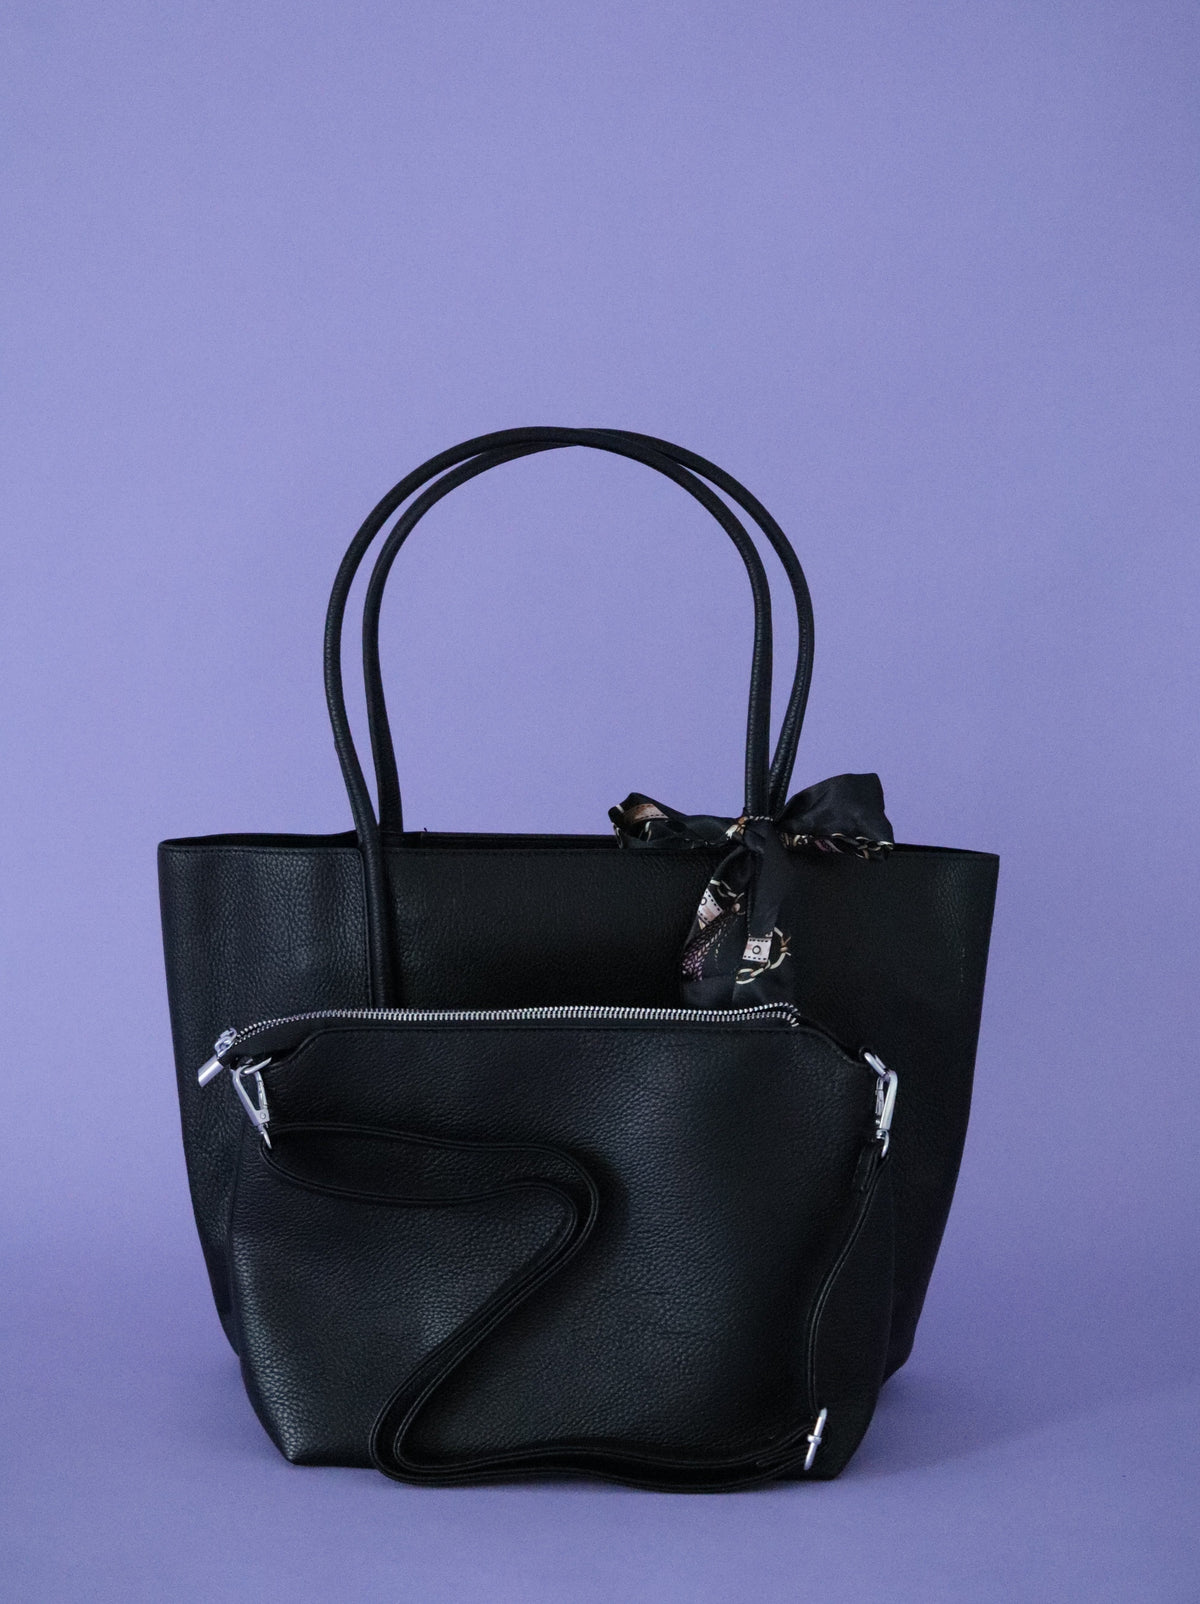 Bonnie Tote Handbag in Black